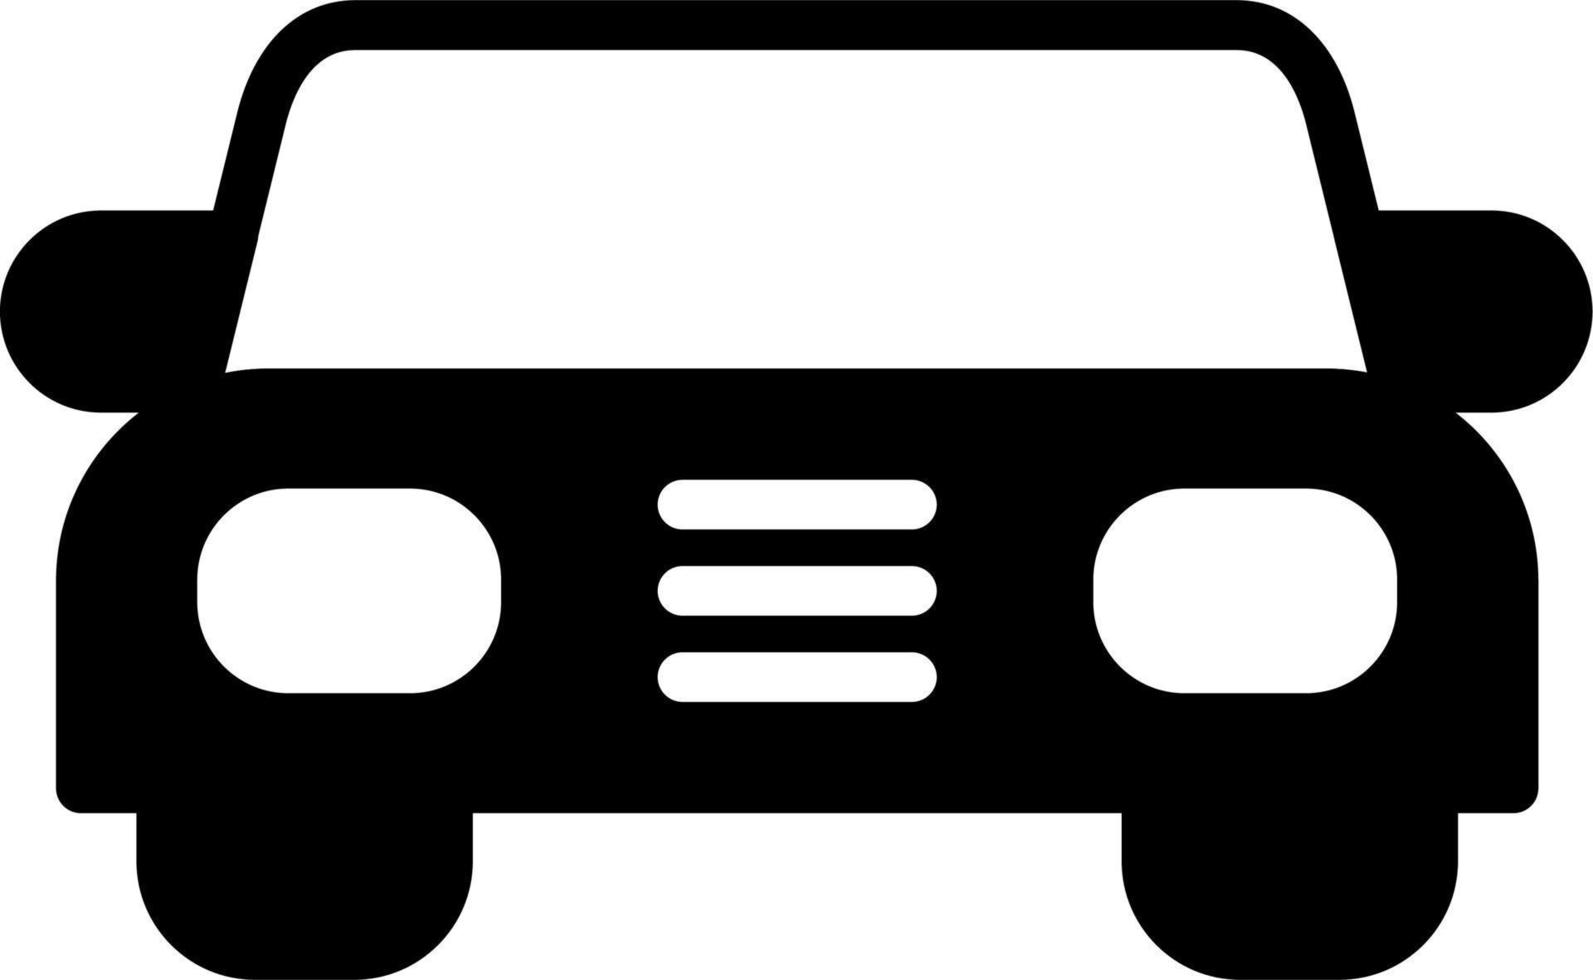 Vehicle Vector Icon